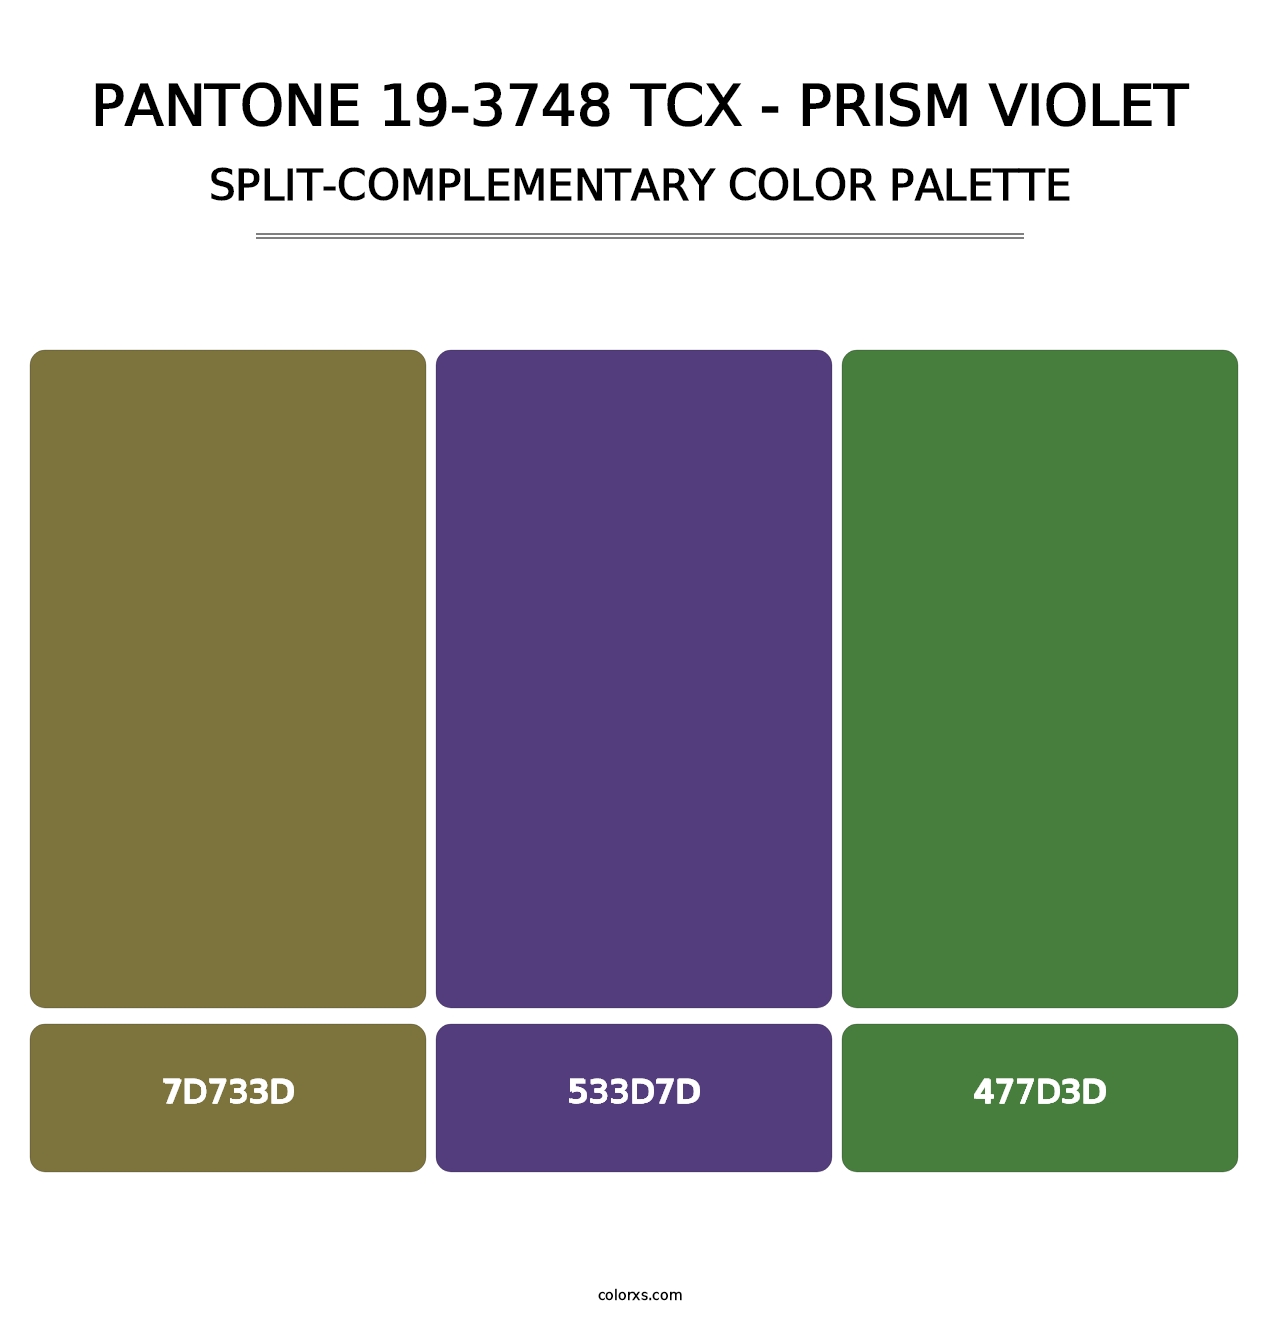 PANTONE 19-3748 TCX - Prism Violet - Split-Complementary Color Palette